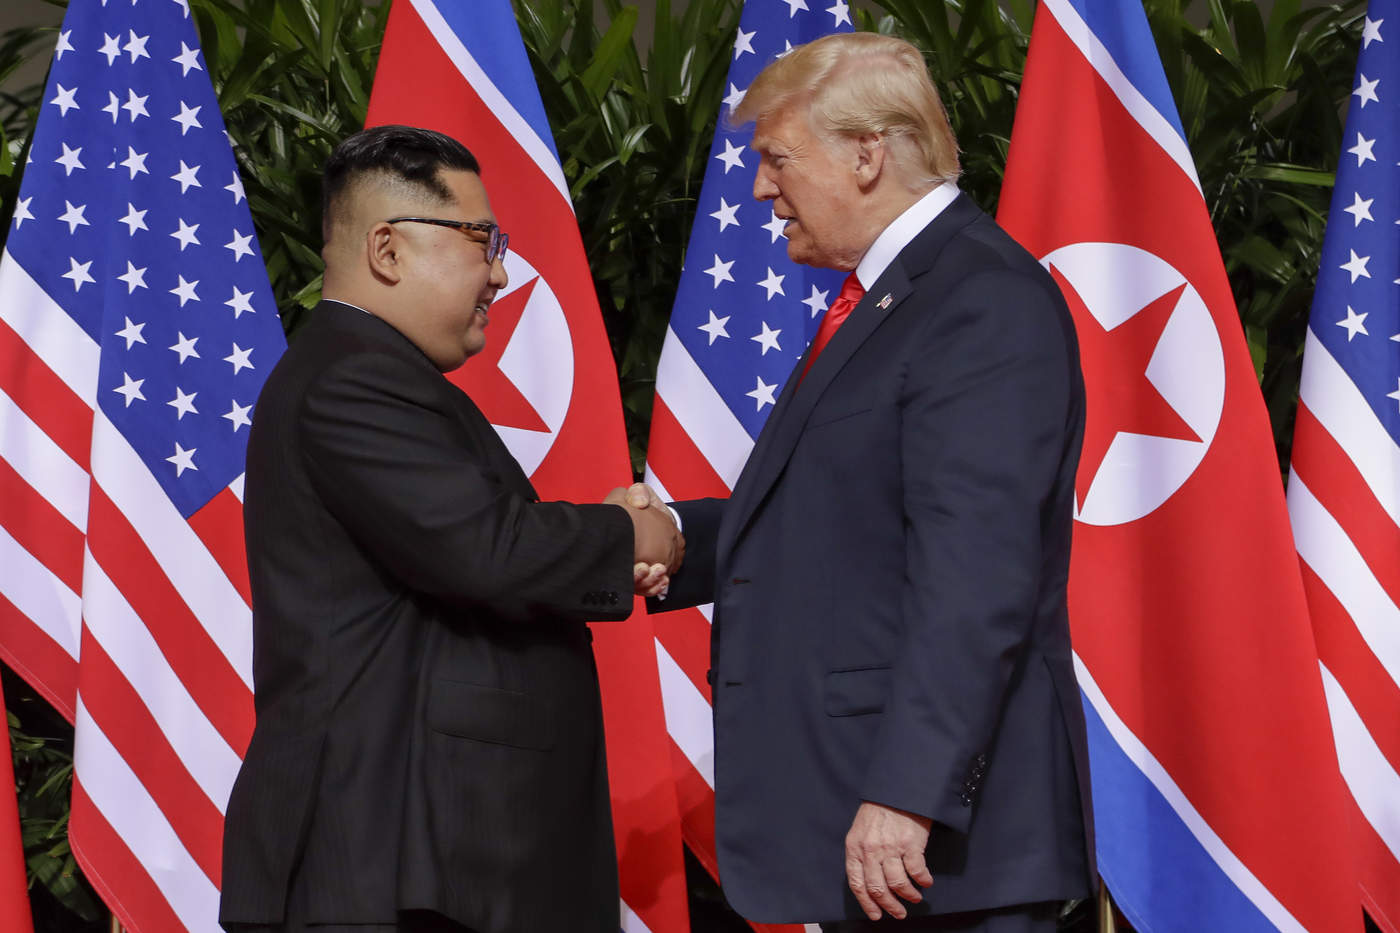 EUA y Corea del Norte evalúan intercambiar enviados especiales, dice CNN